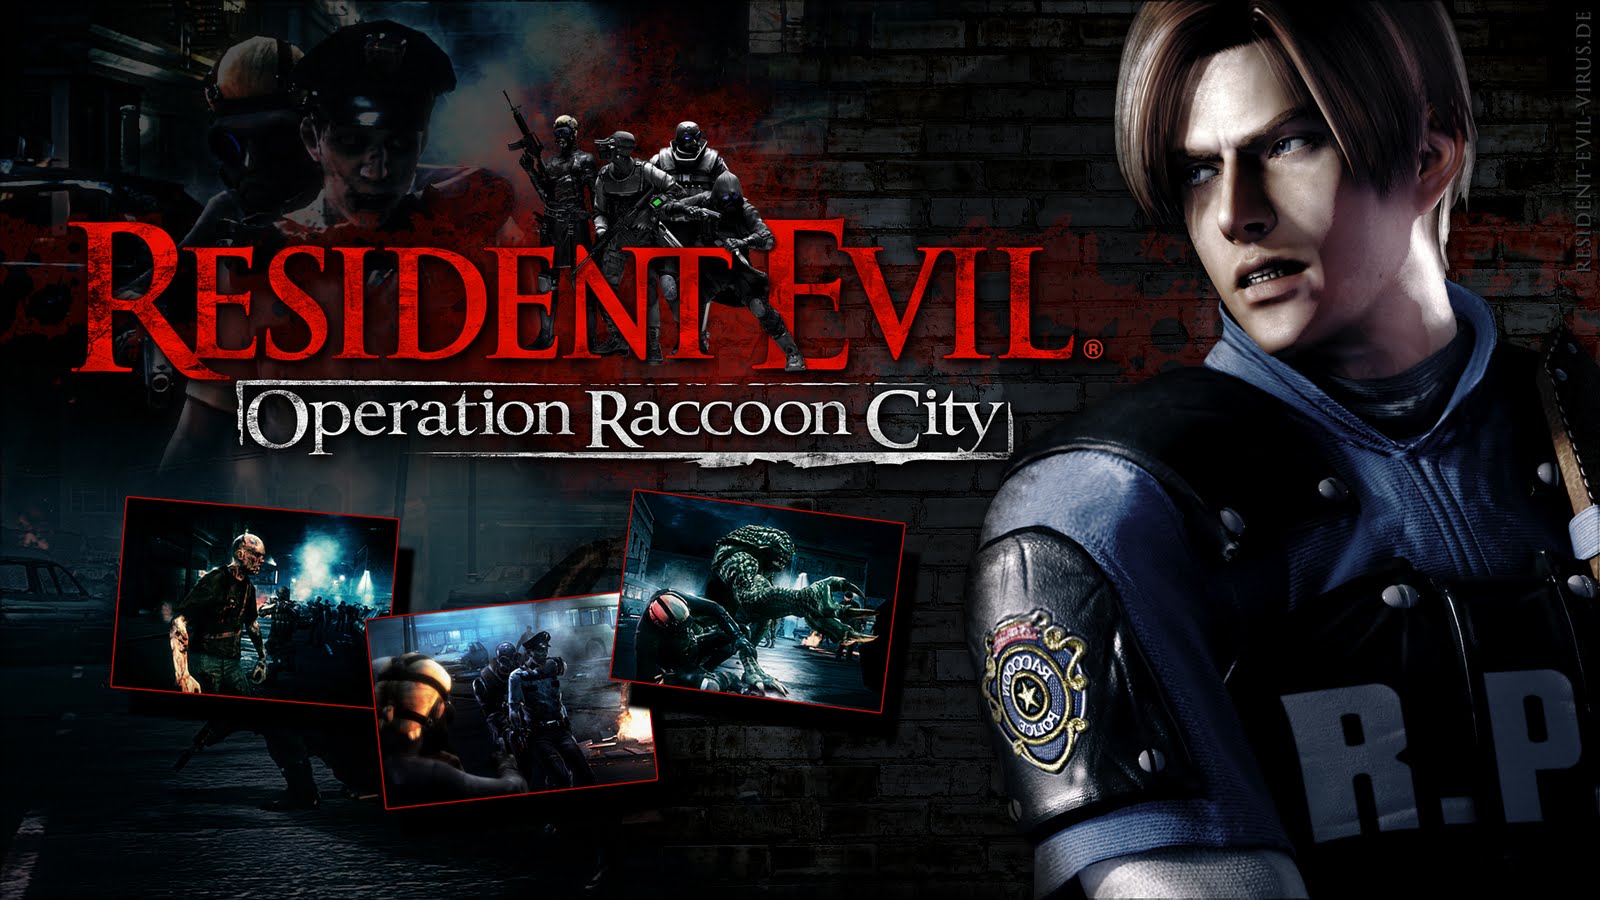 Resident Evil RPG PDF, PDF, Resident Evil